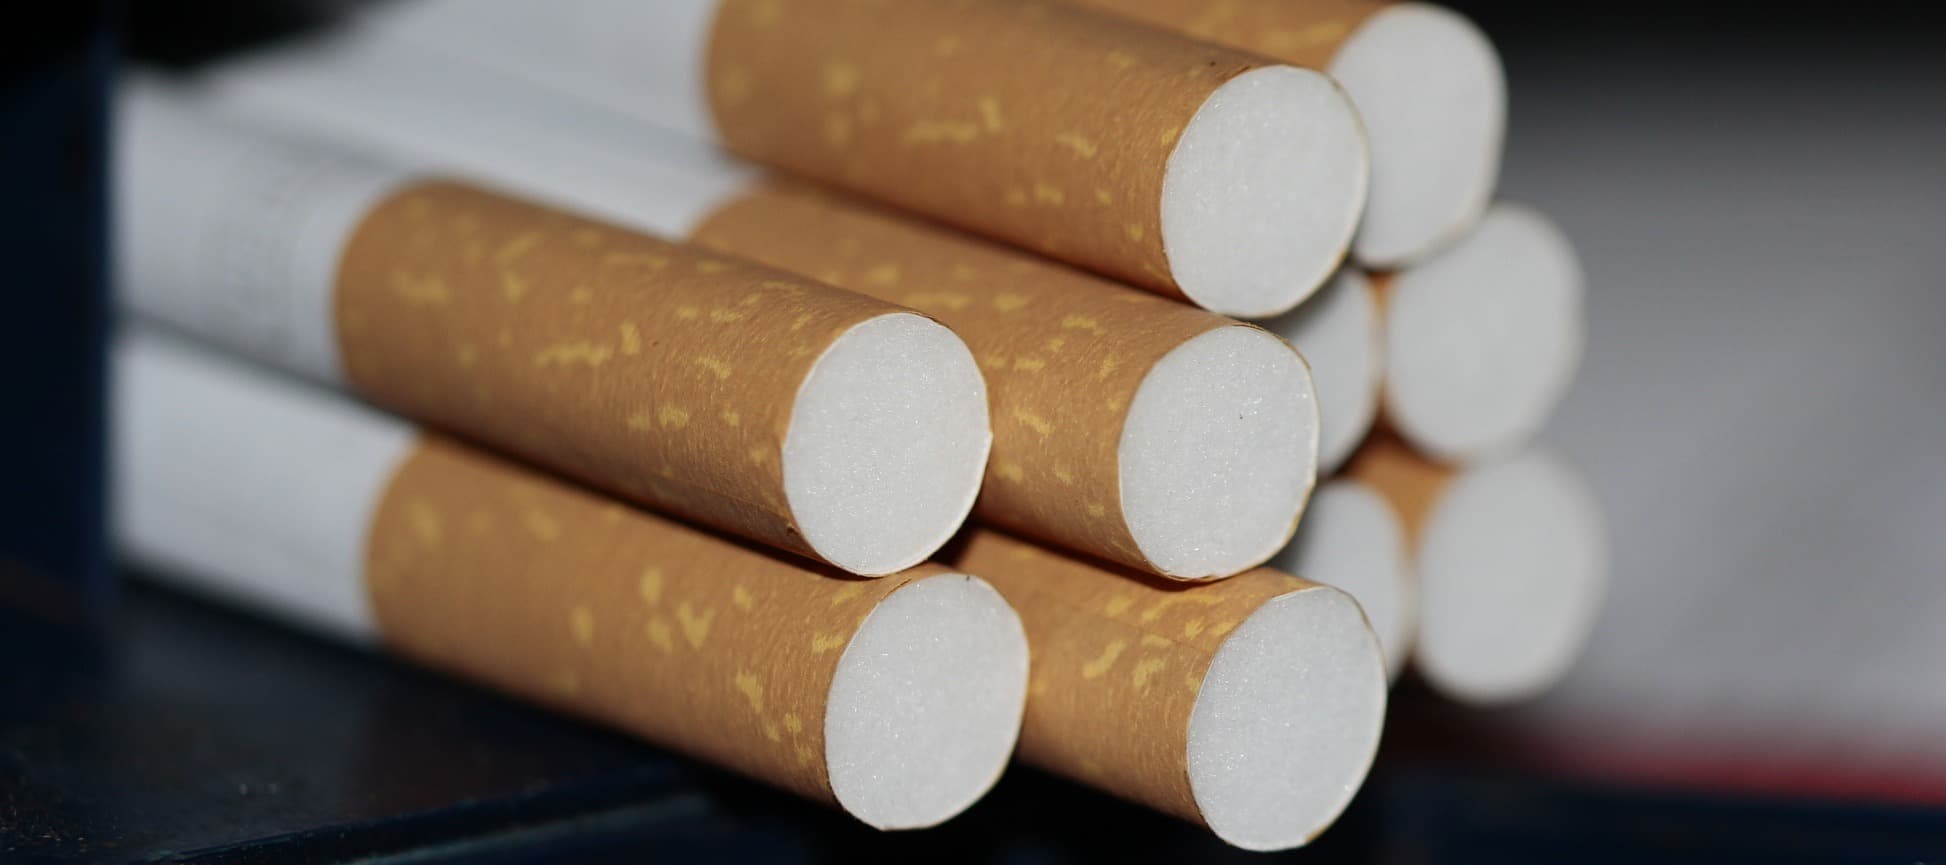 Фото новости: "Производитель сигарет Davidoff расширит в России портфель брендов"